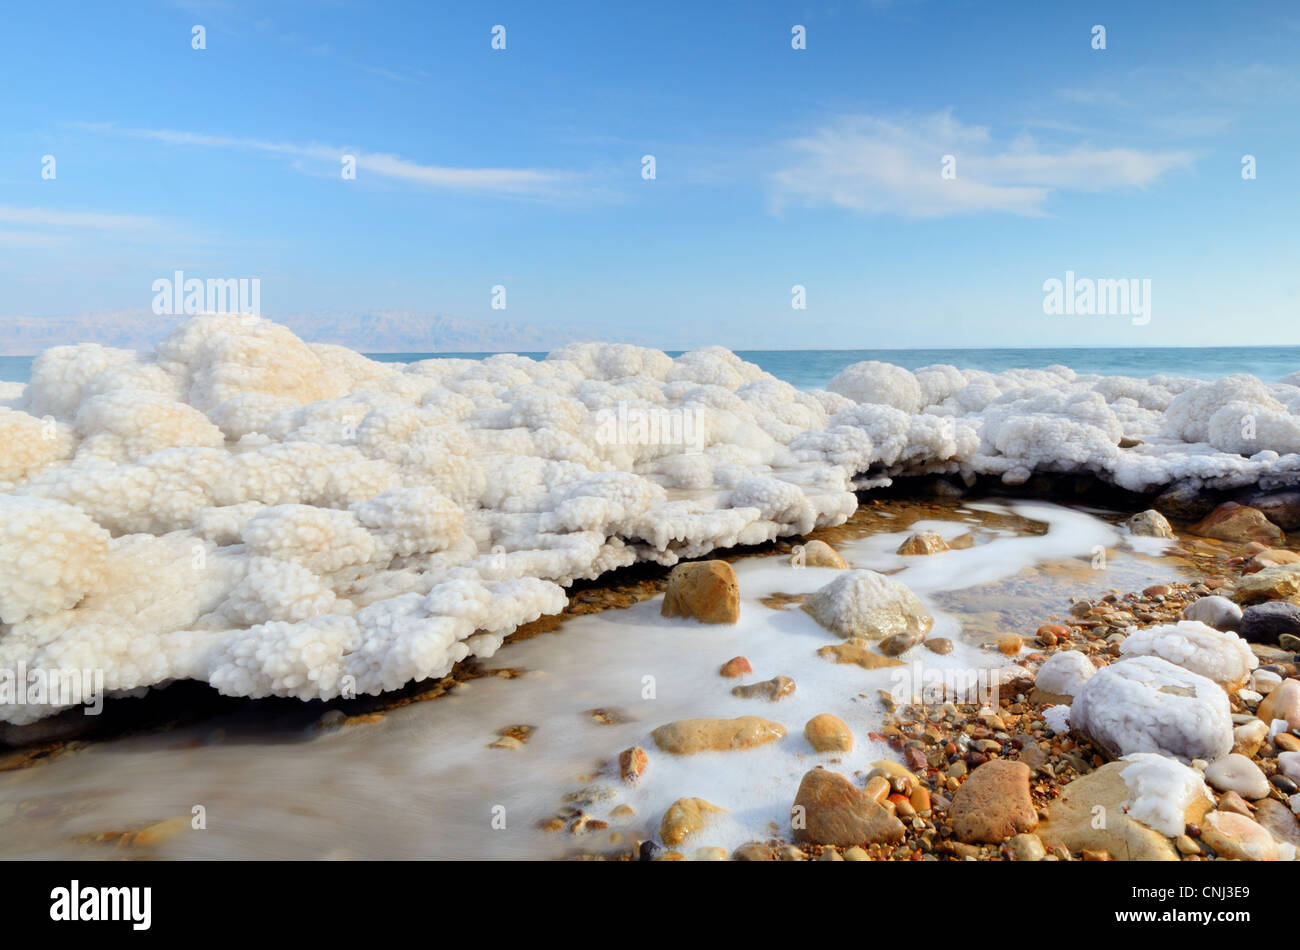 Formations de sel dans la mer Morte d'Israël près de la ville d'Ein Gedi. Banque D'Images